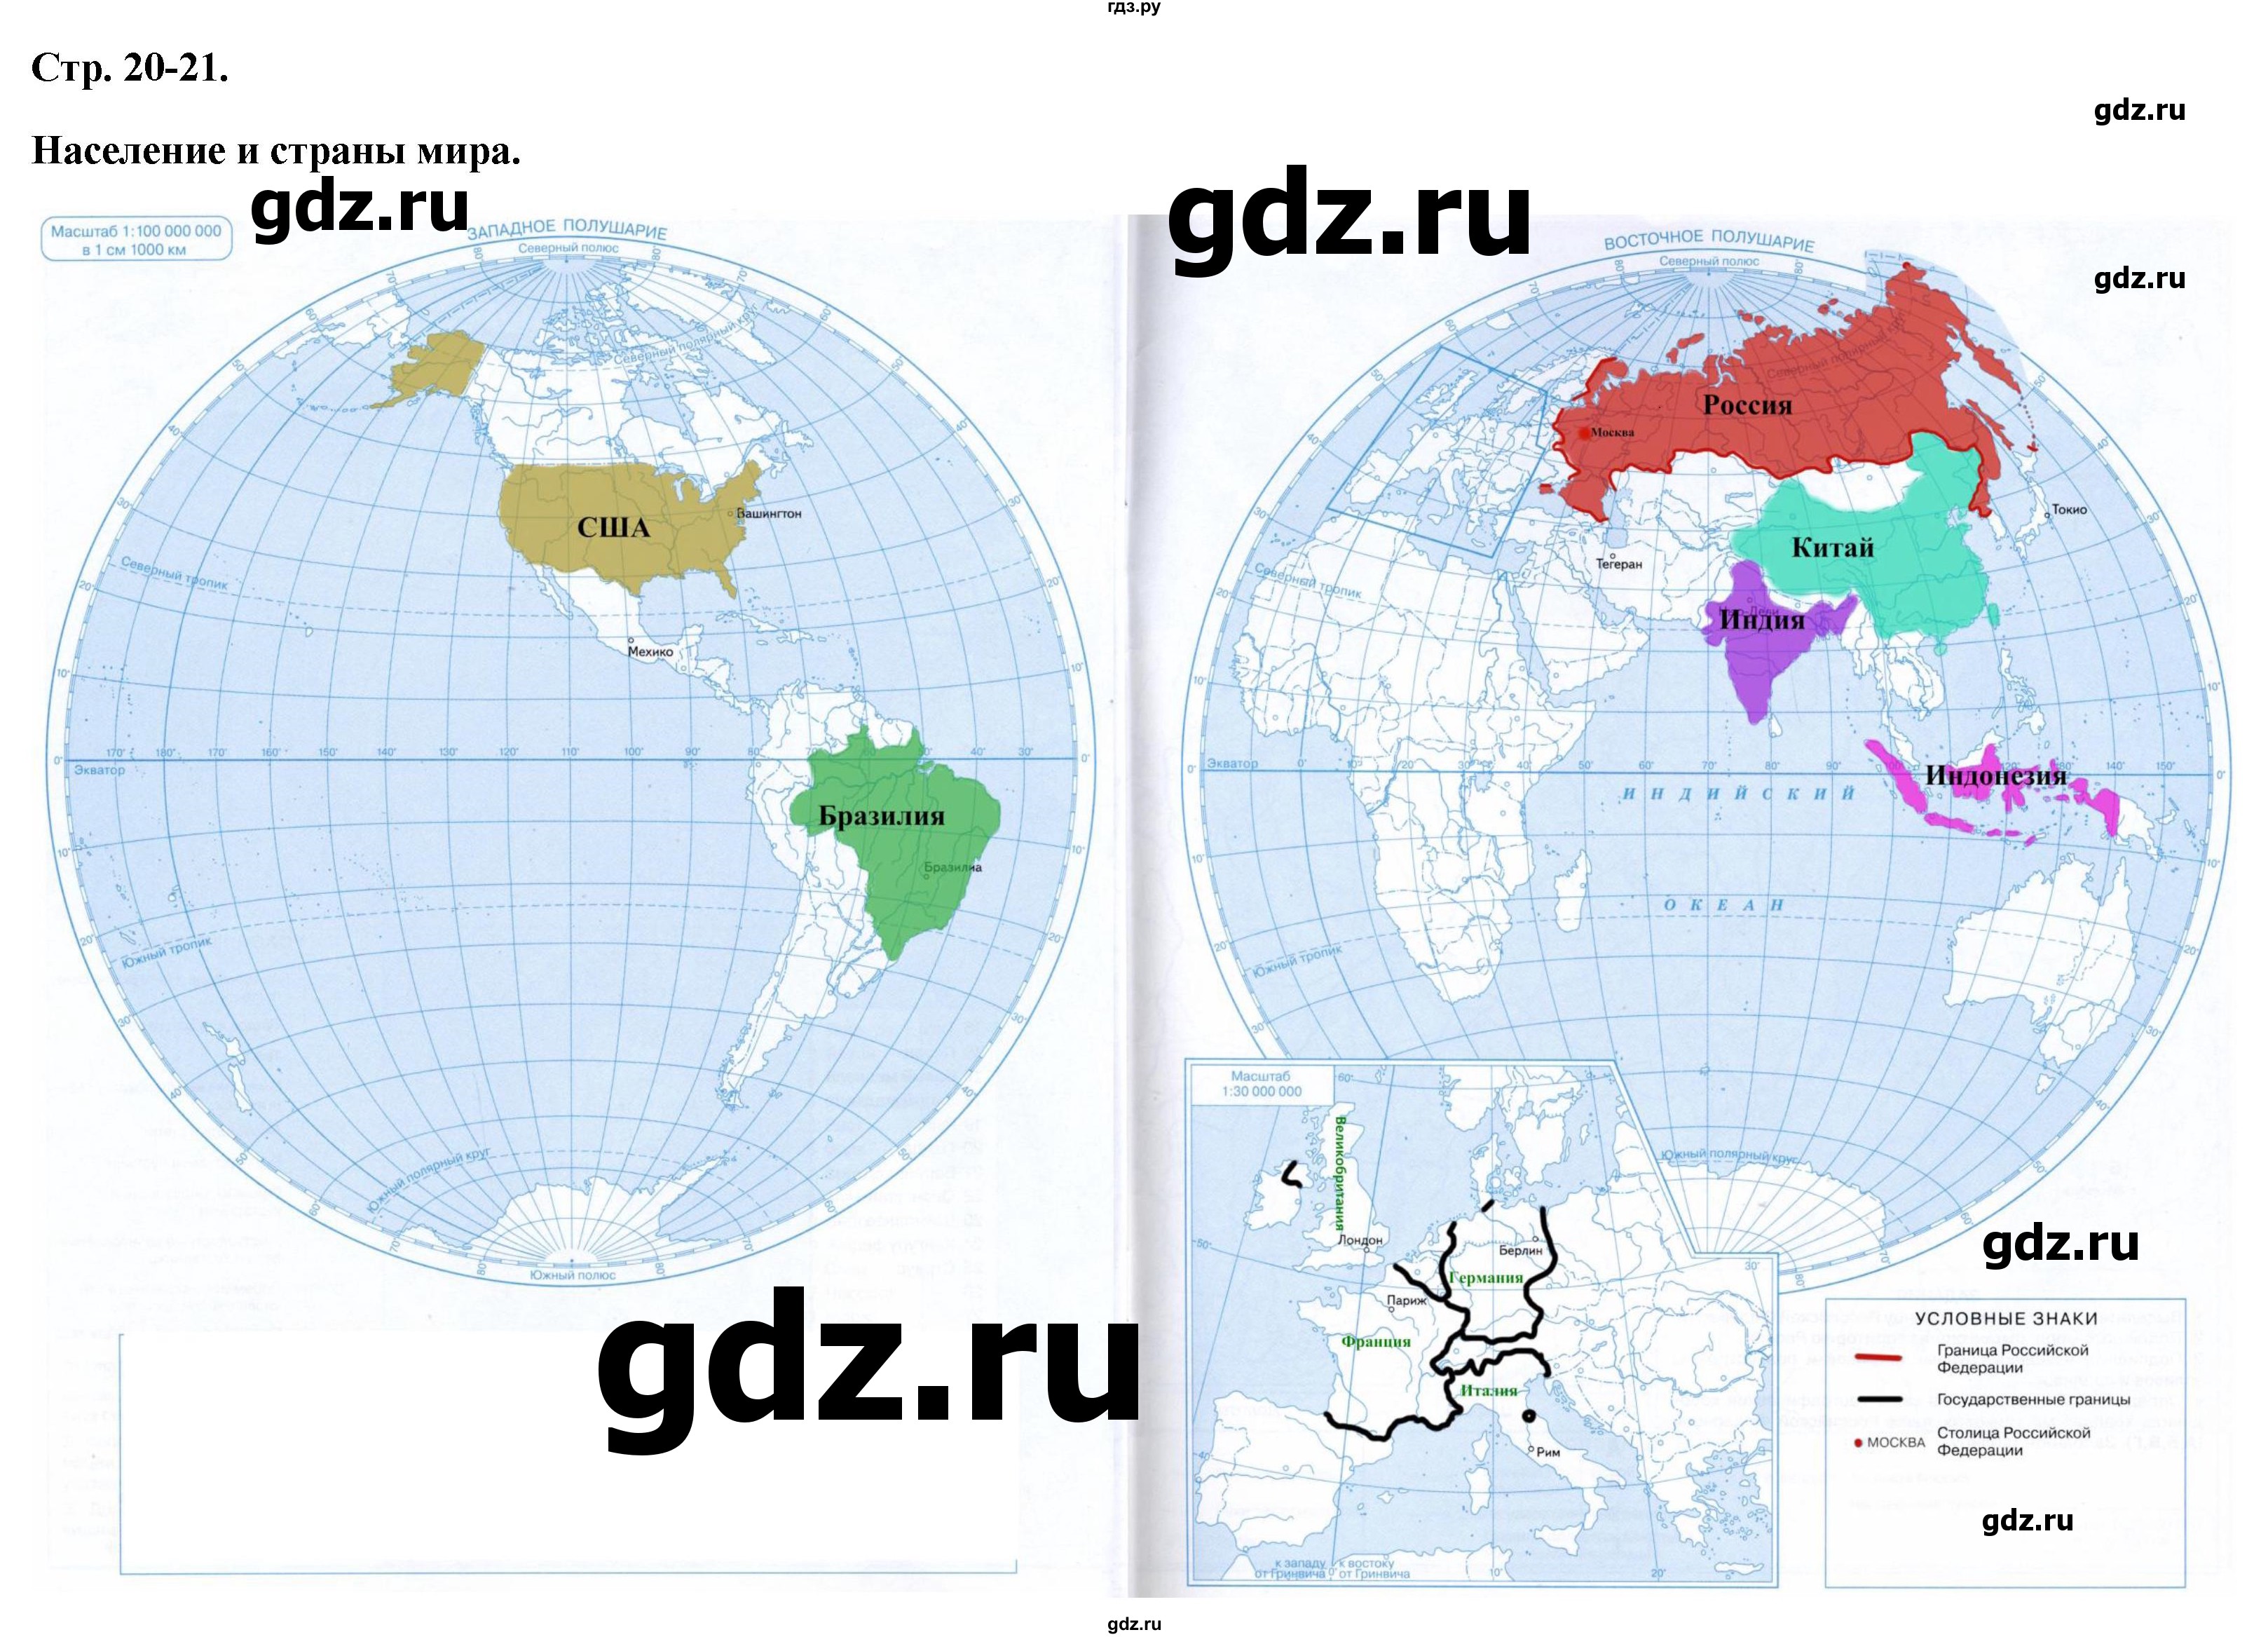 ГДЗ контурные карты стр.20-21 география 6 класс контурные карты Курбский,Курчина